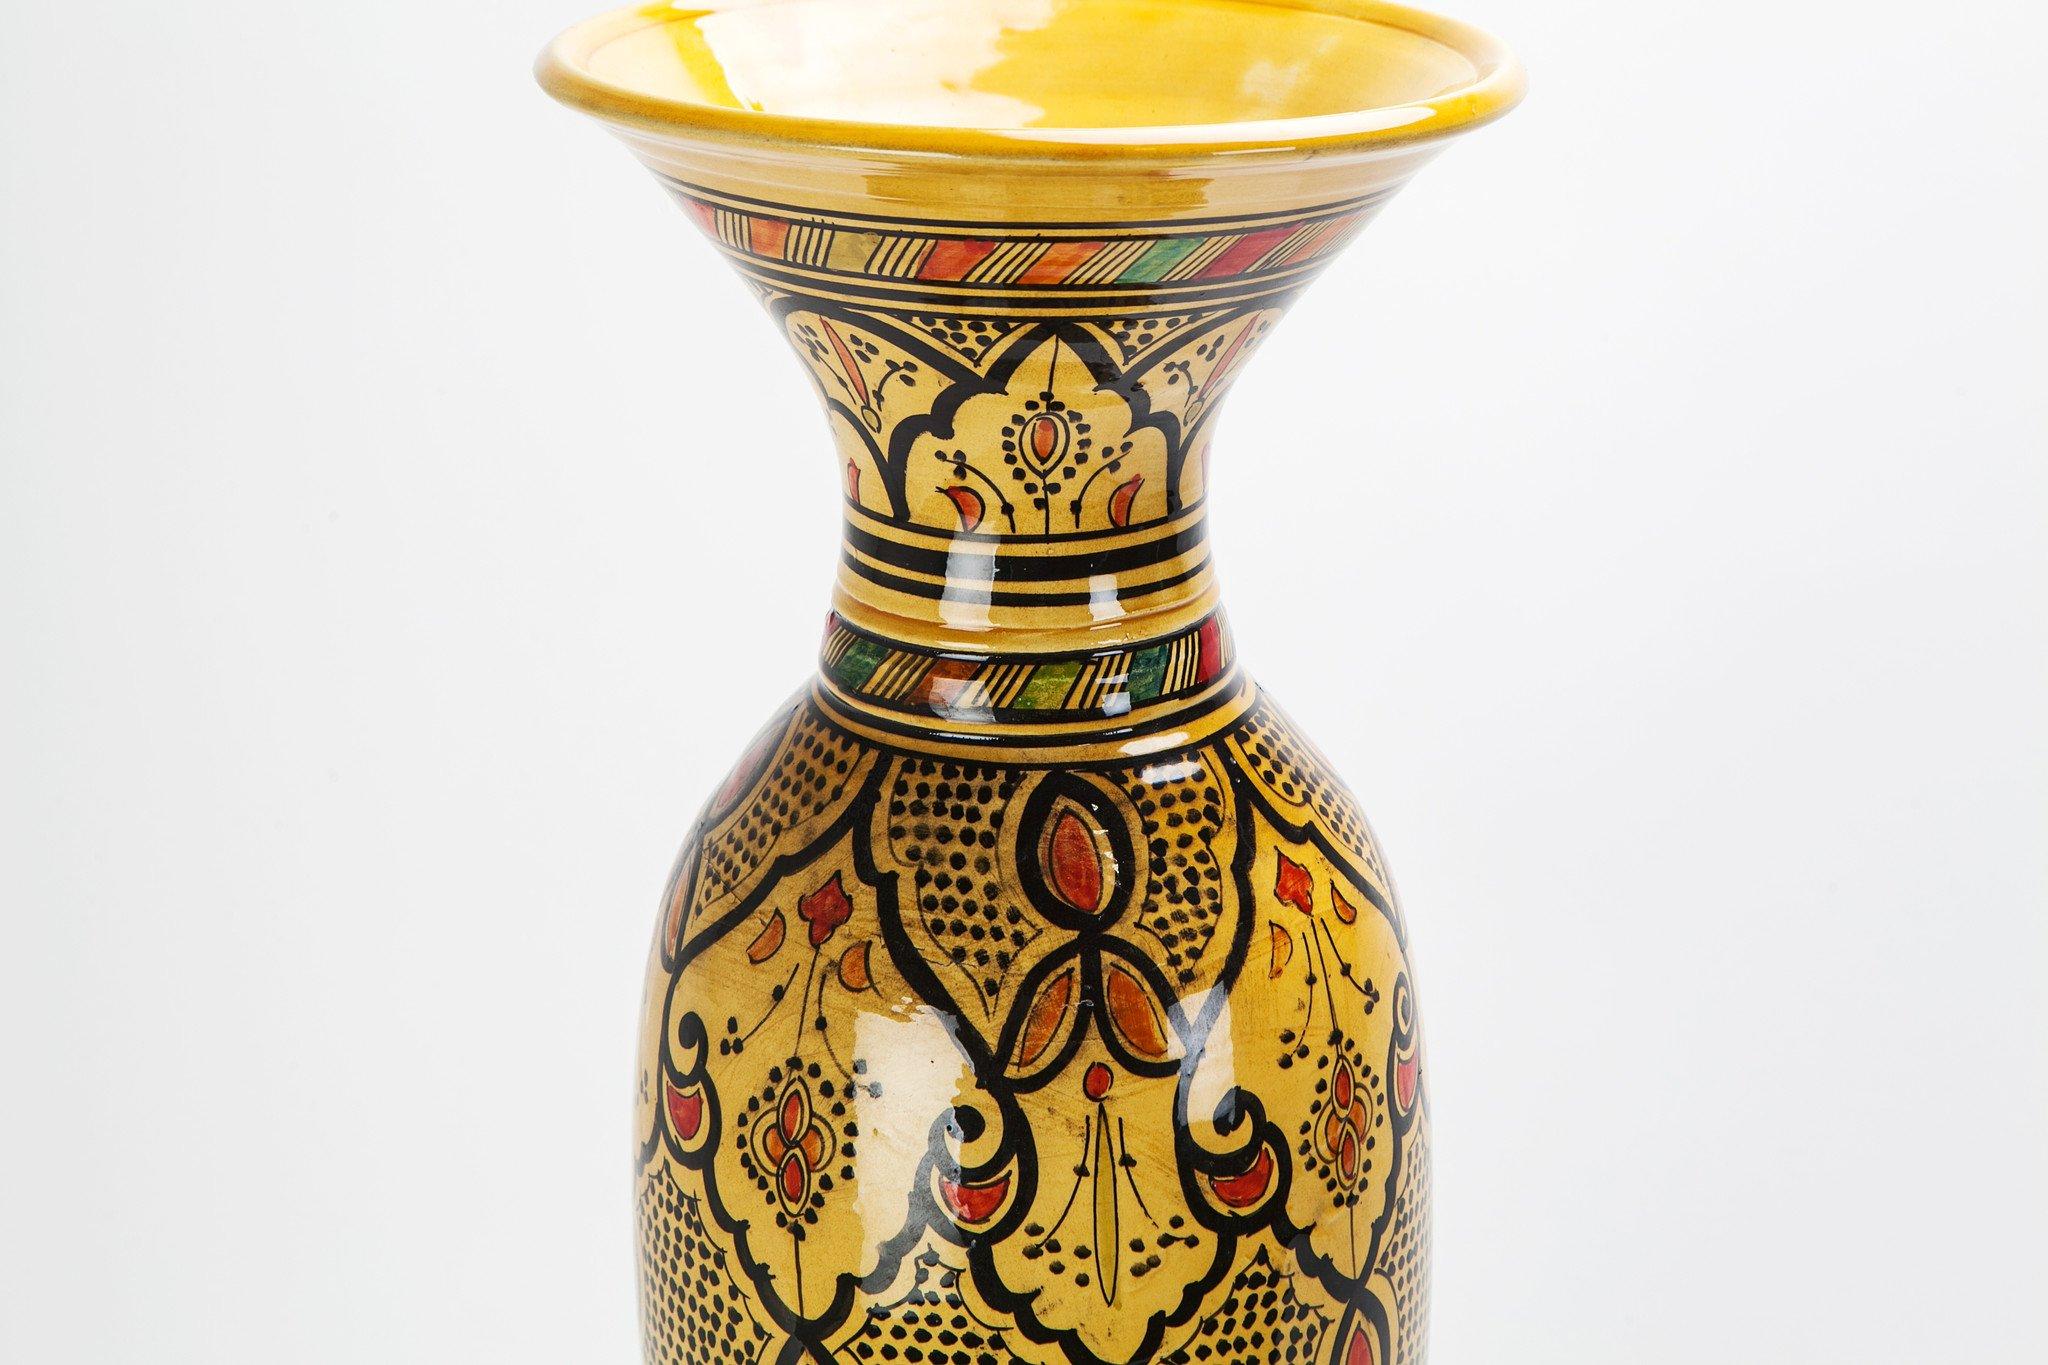 Avec son intrigante forme conique, ses couleurs rustiques absorbantes (jaune, orange et noir) et son motif richement orné, ce vase vintage visuellement puissant, fabriqué à la main, est l'ajout idéal à toute pièce en quête d'élégance exotique. Le